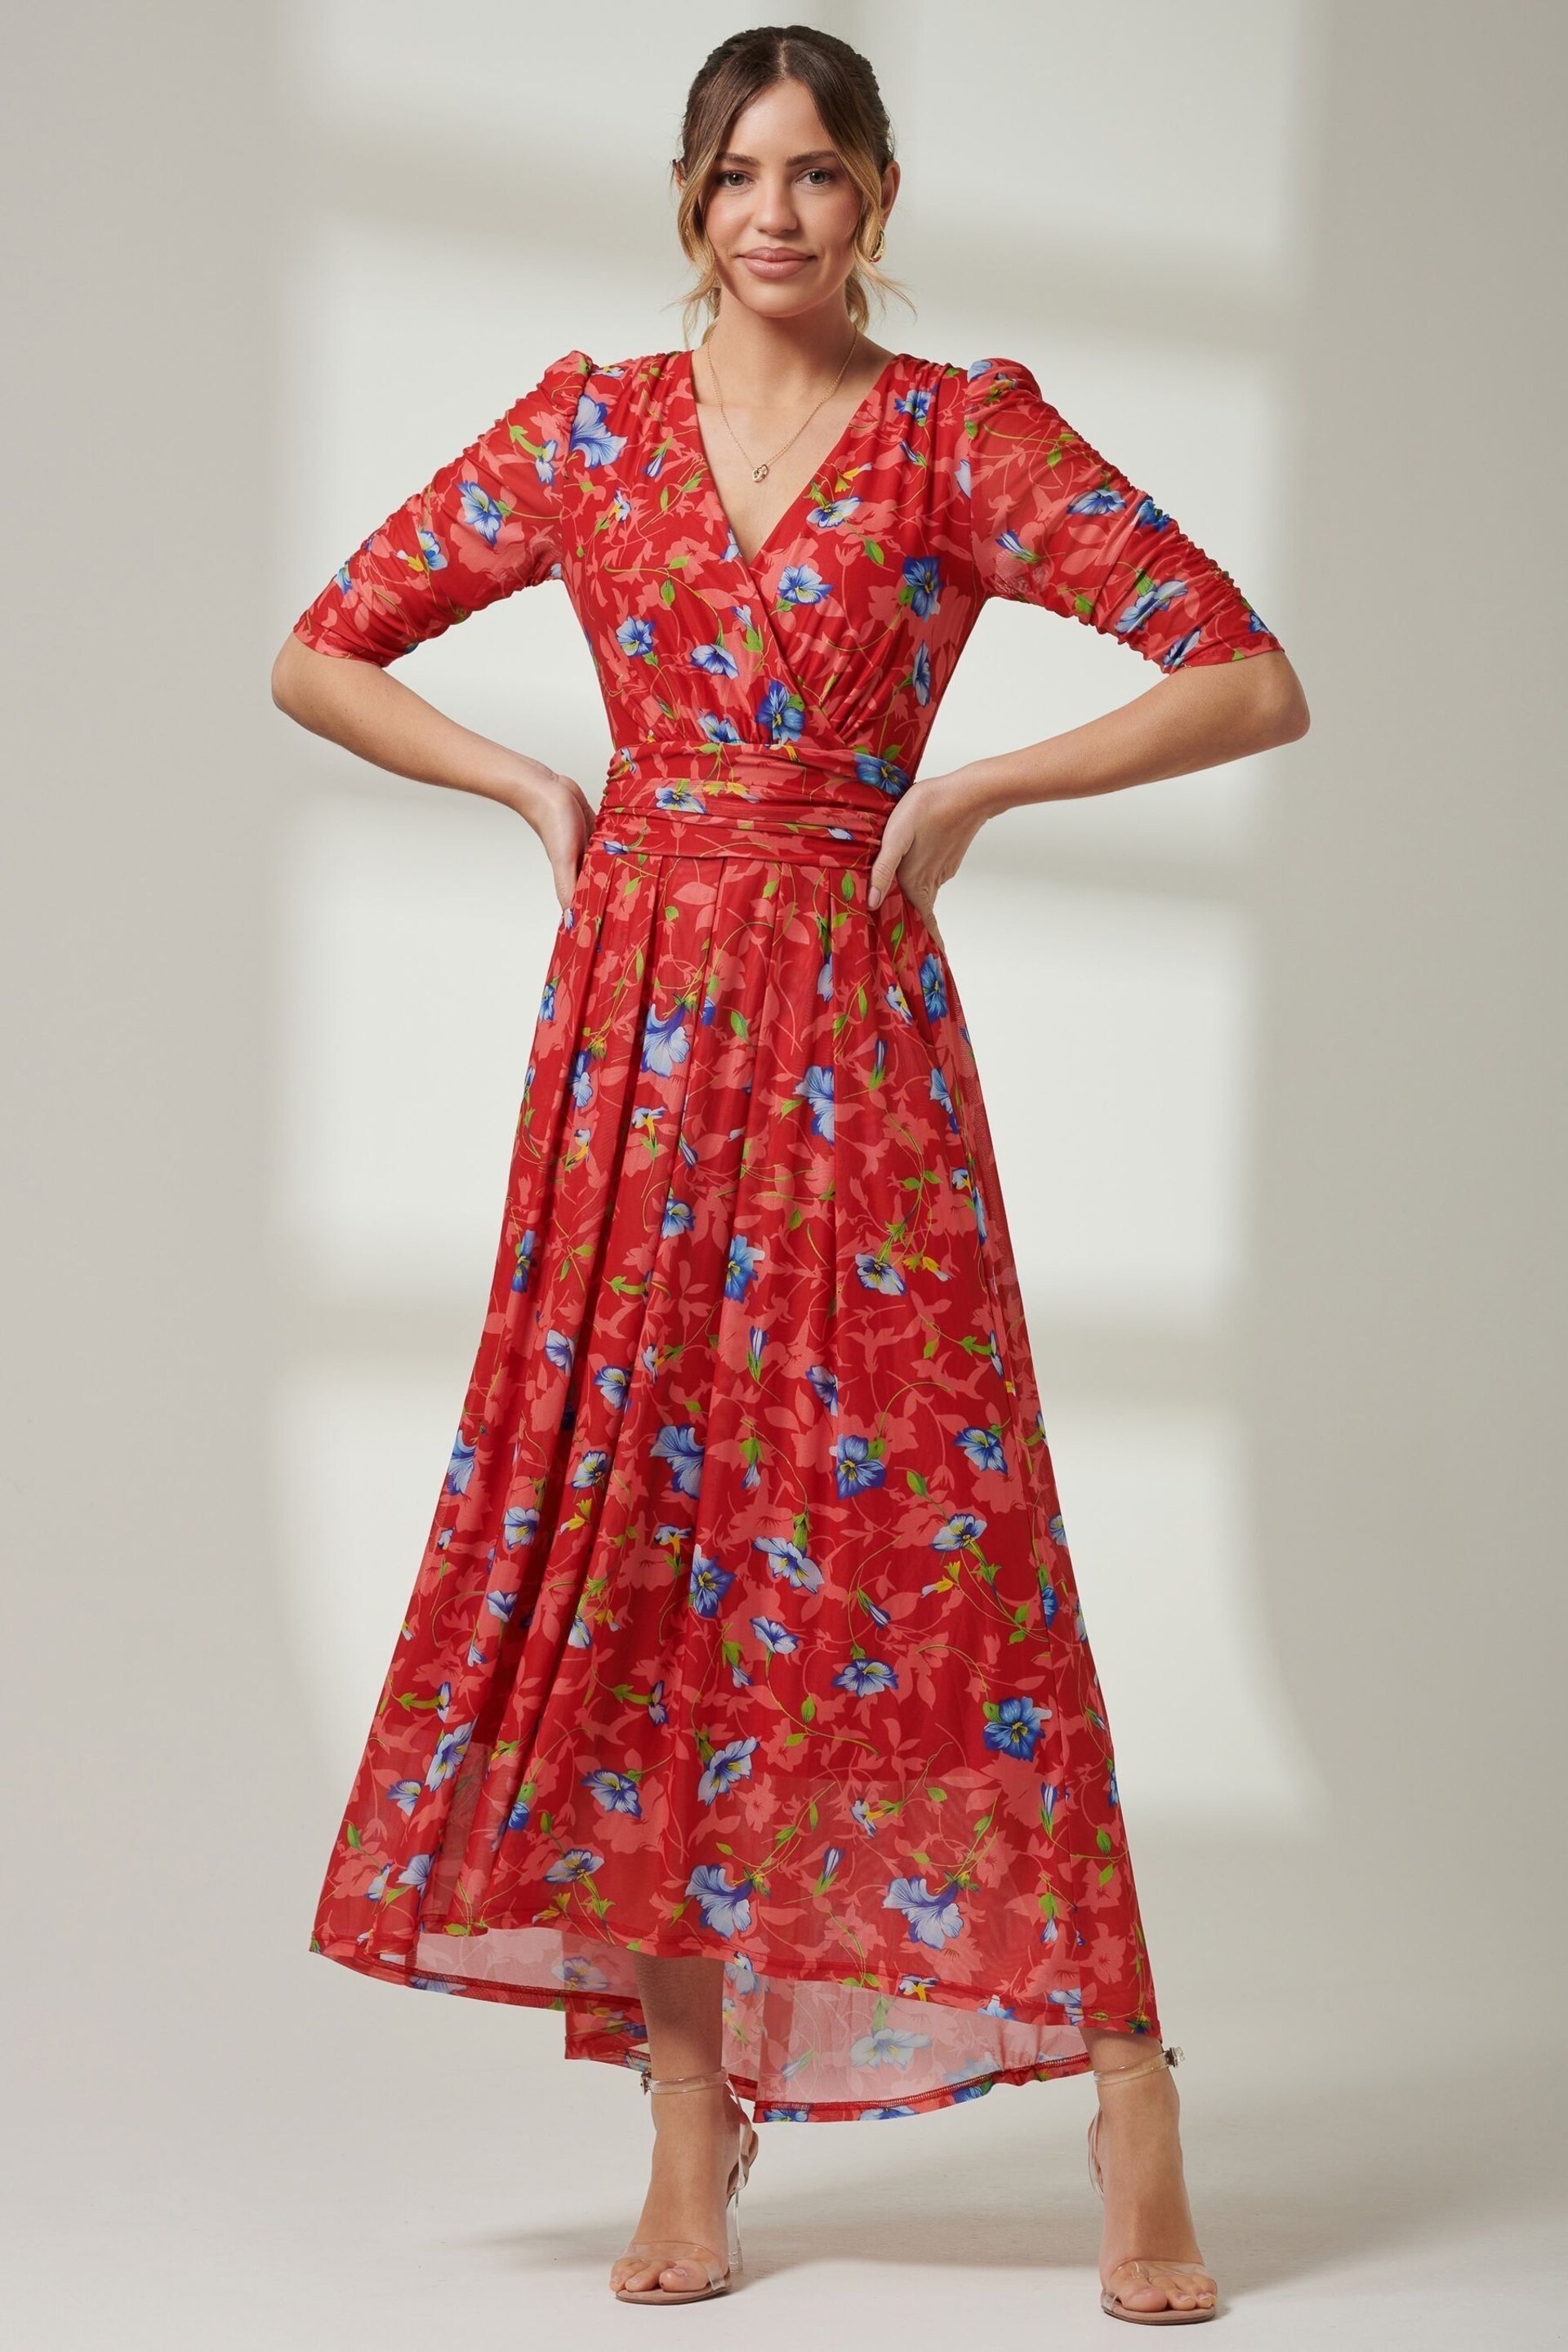 Jolie Moi Red V-Neck Short Sleeve Mesh Maxi Dress - Image 6 of 6